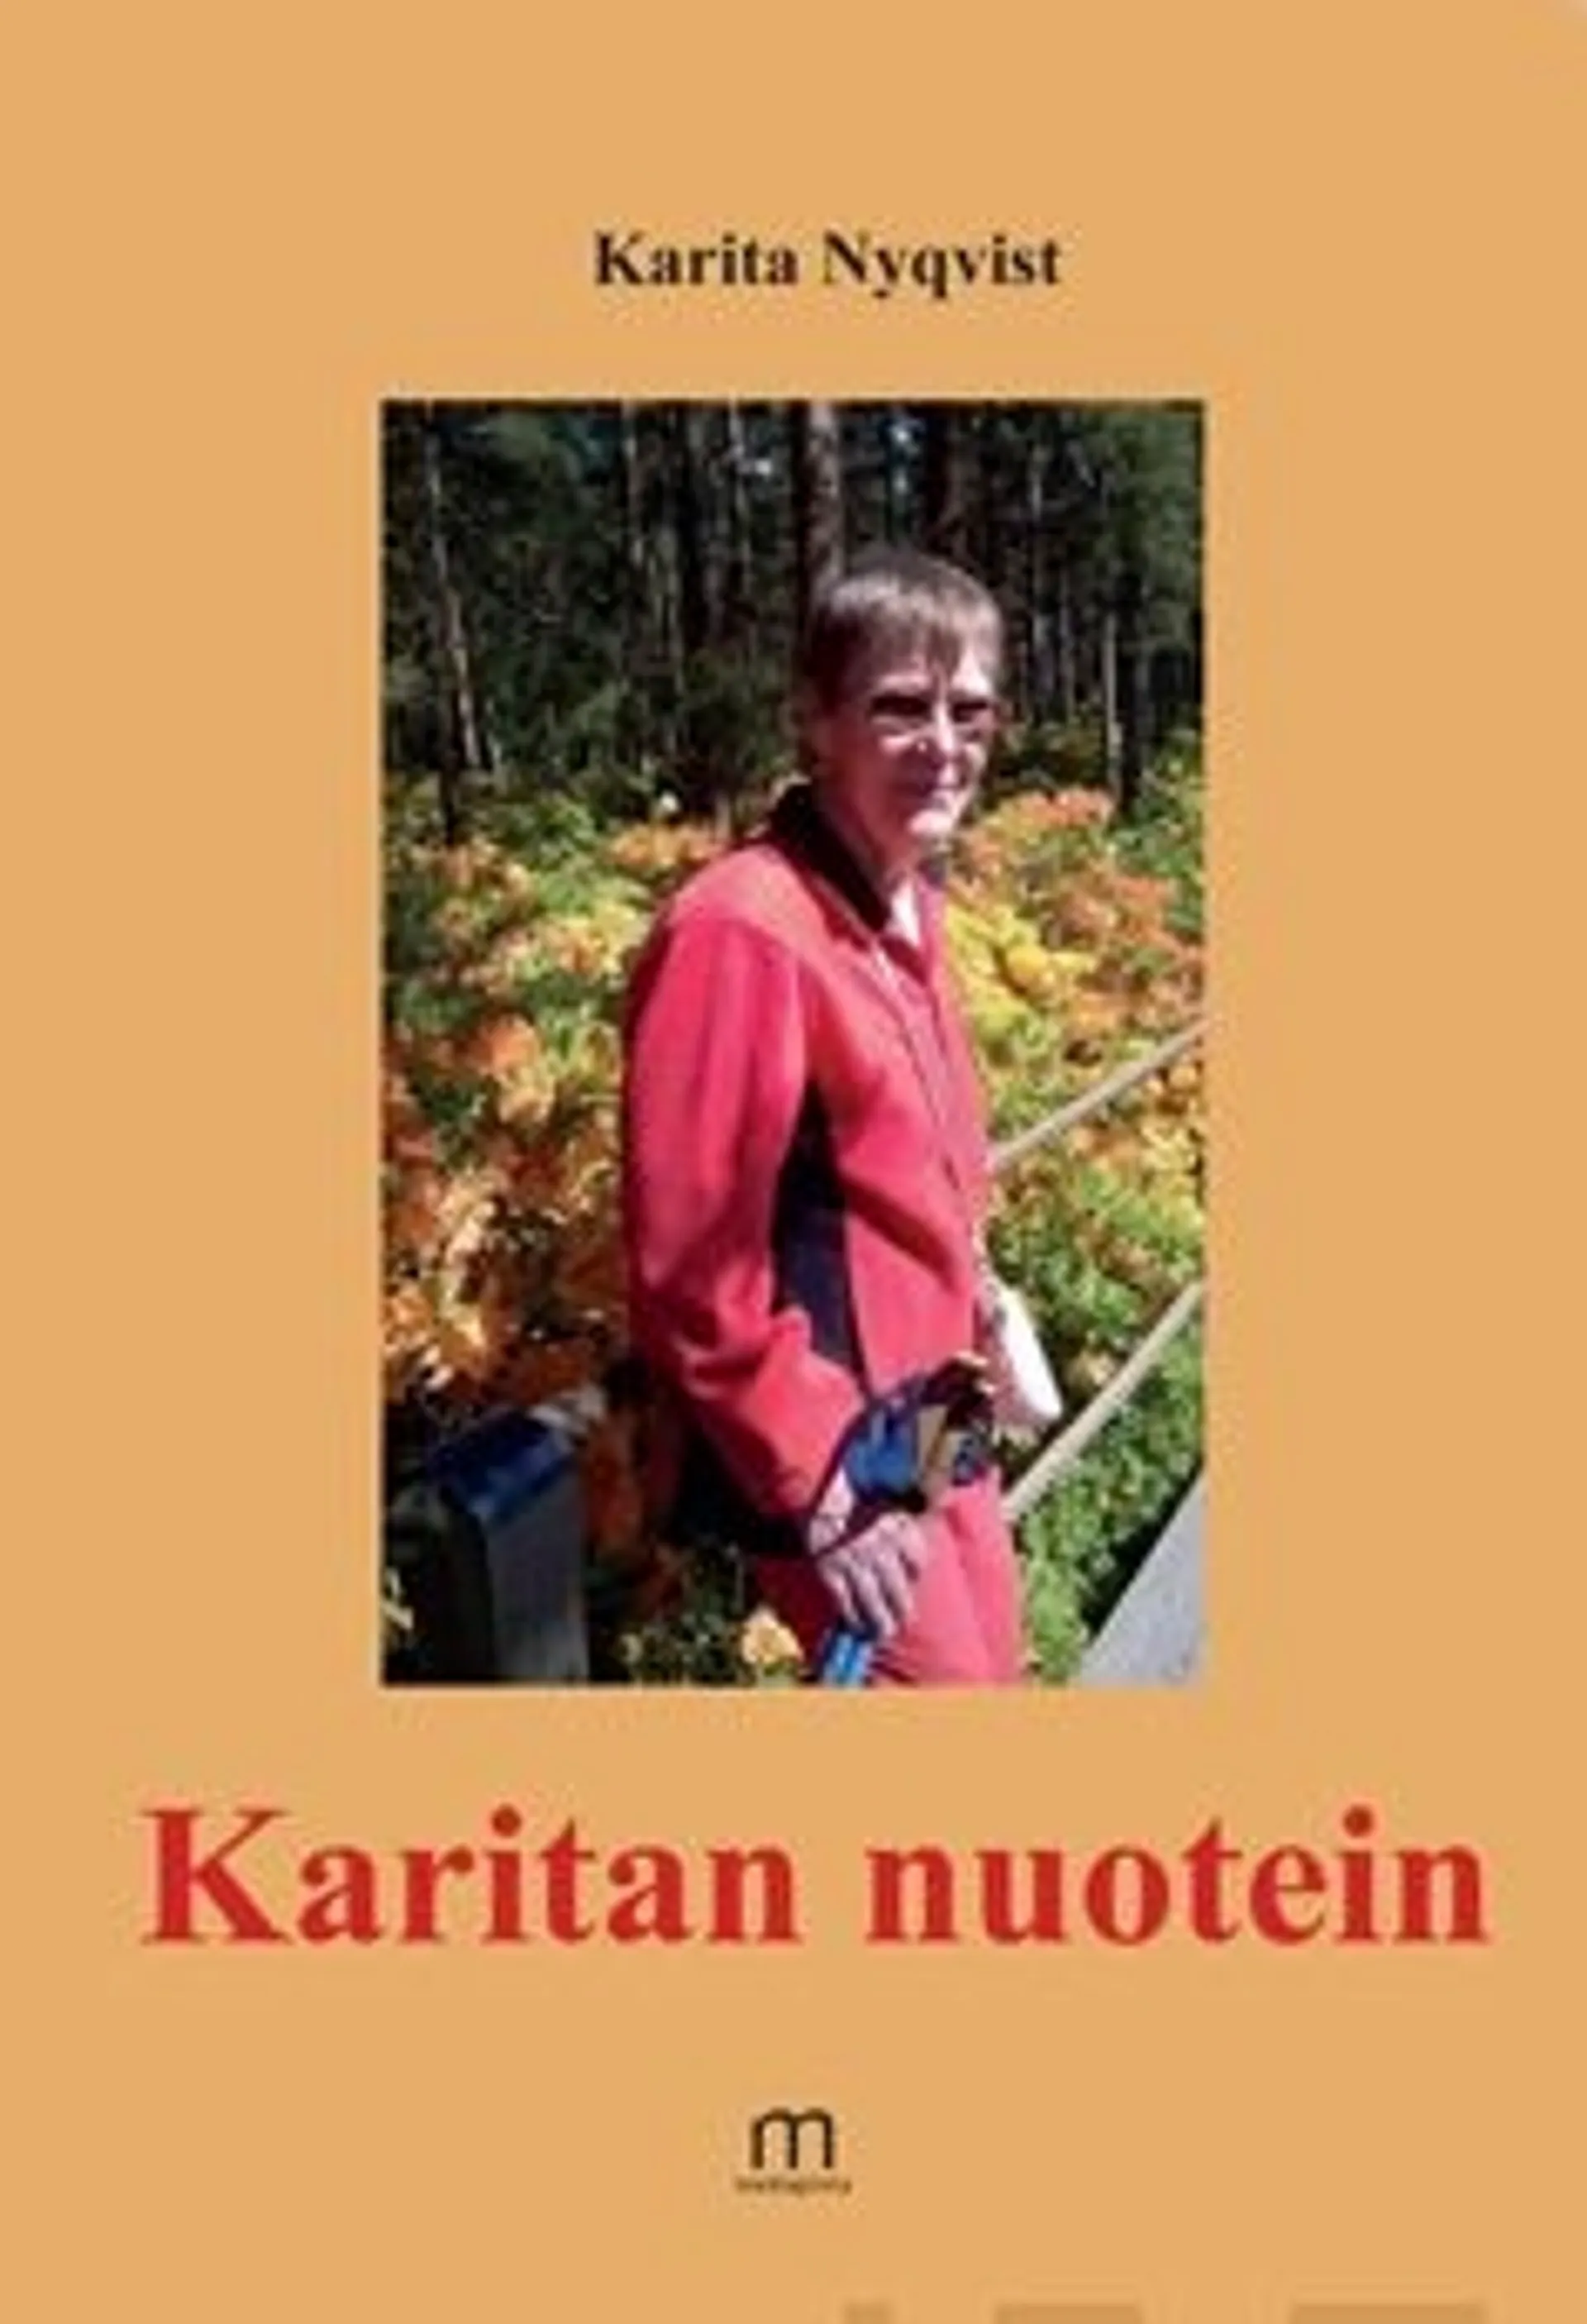 Nyqvist, Karitan nuotein